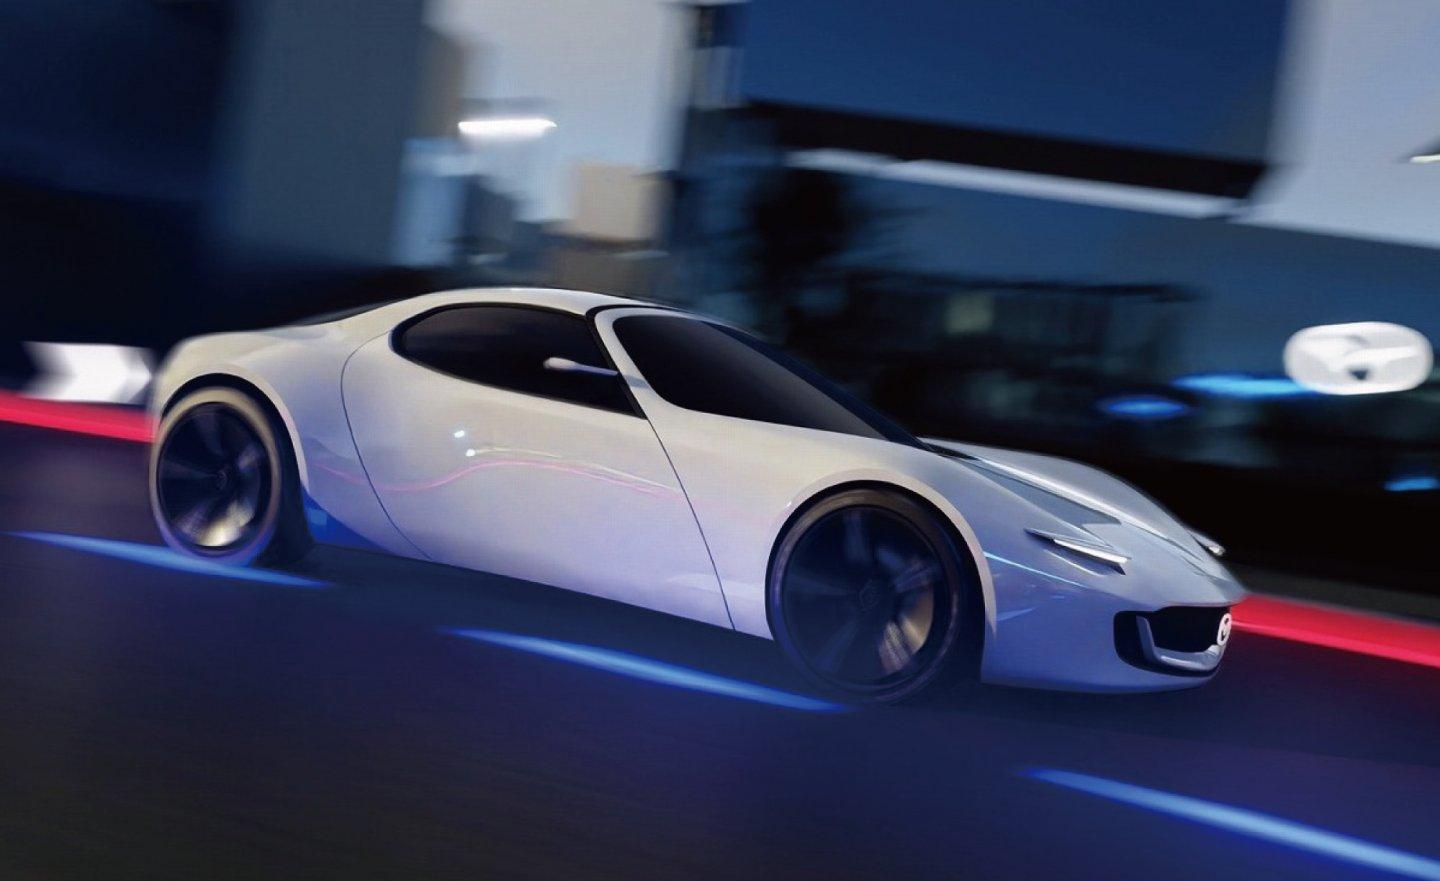 馬自達 Mazda Vision Study 概念車是下一代 MX-5 嗎？外型靈感來自 RX-7